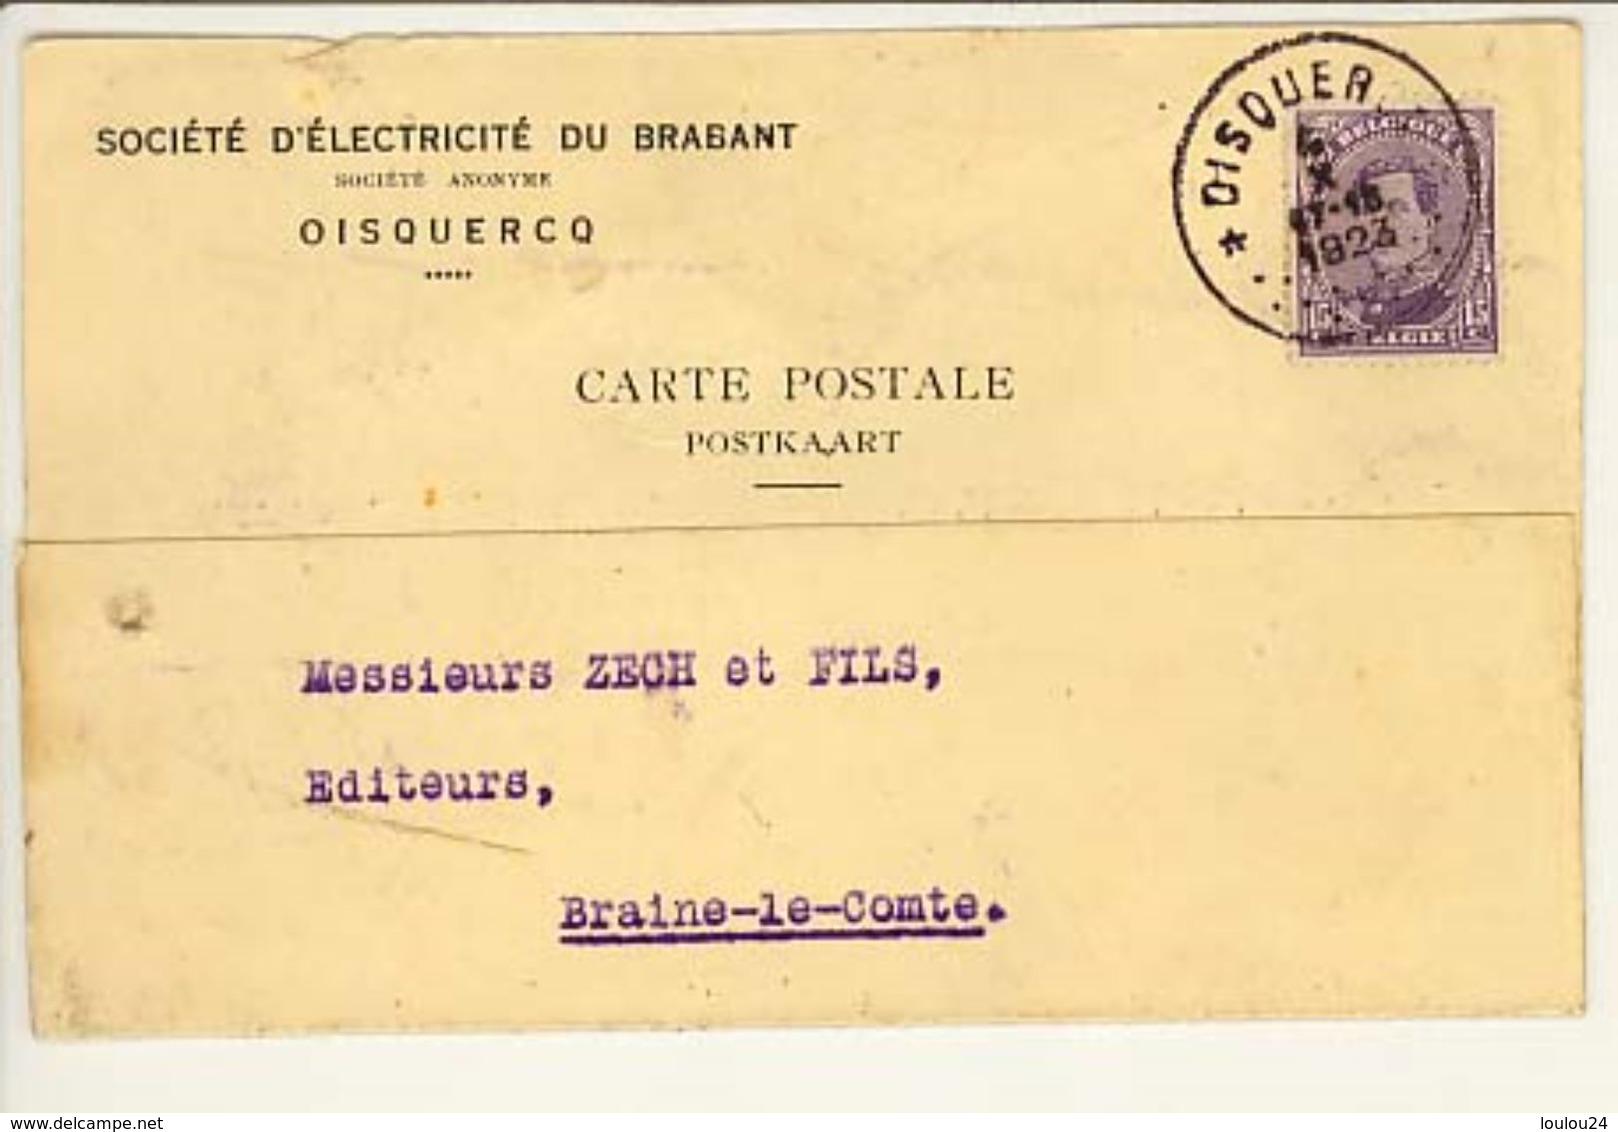 T139   04 10 1923  Etoile Oisquercq - Cachets à étoiles